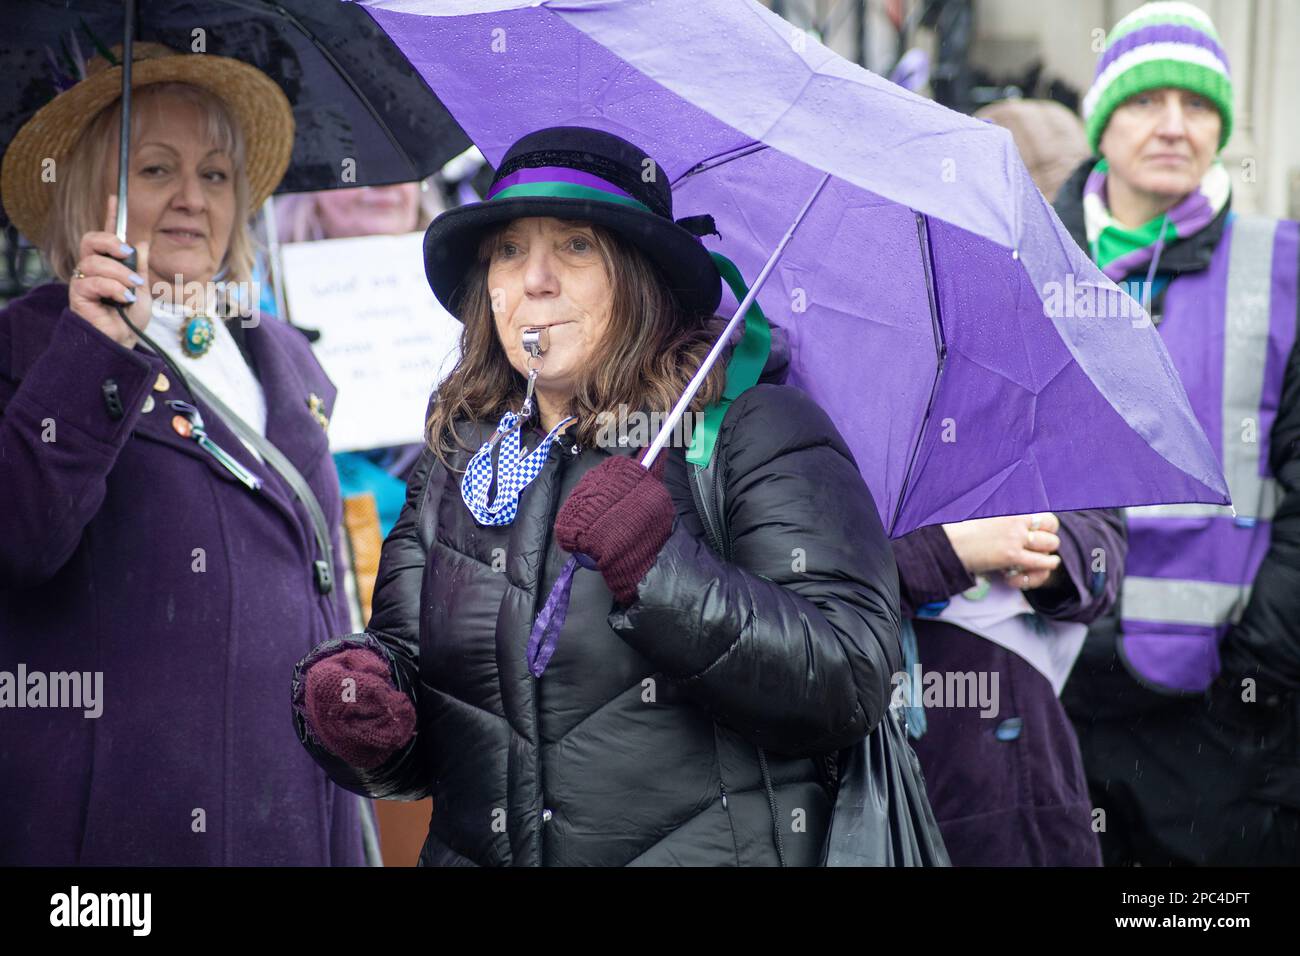 Le donne di WASPI-le donne contro la disuguaglianza pensionistica statale-hanno protestato contro il cambiamento nell'età pensionabile. Credit: Sinai Noor/Alamy Stock Photo Foto Stock